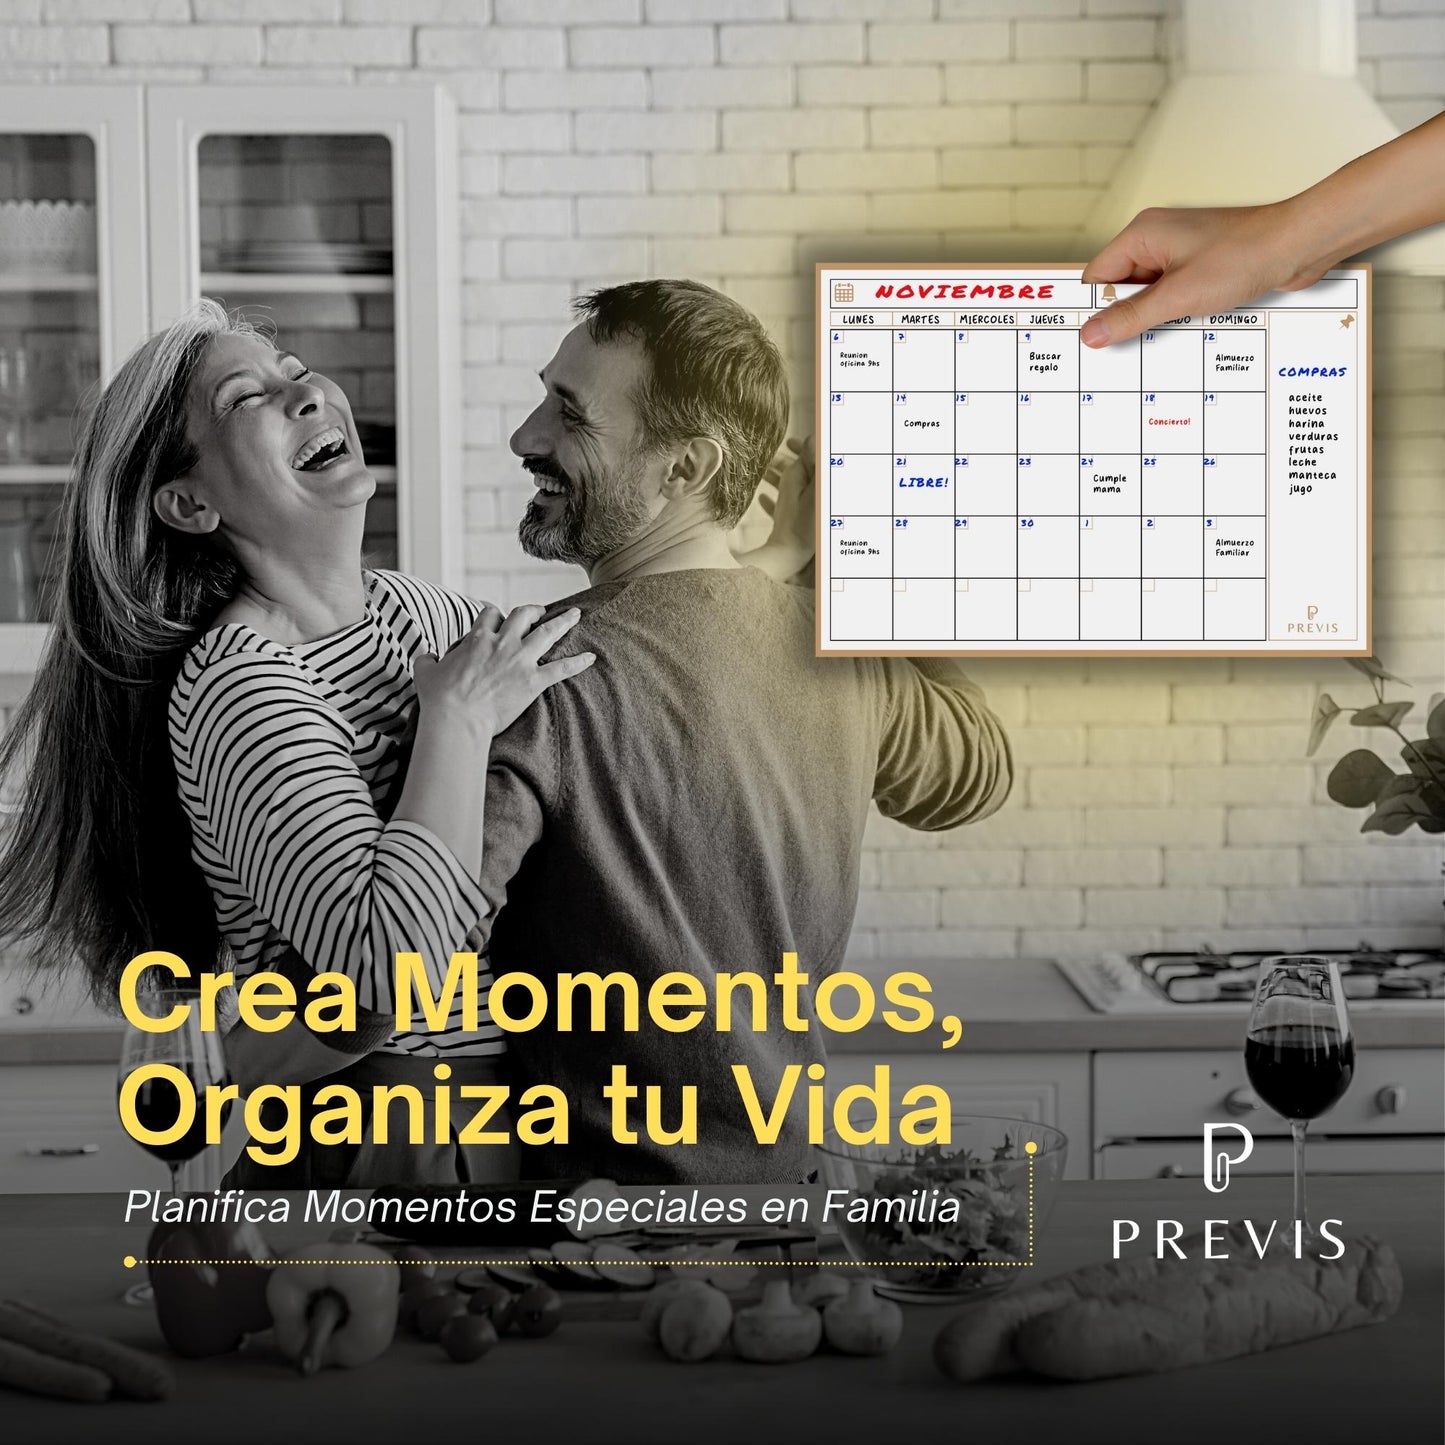 Calendario Magnetico Nevera A4 con Rotuladores Premium - Planificador Mensual Magentico para Organizar Mes, Familia, Citas y Eventos